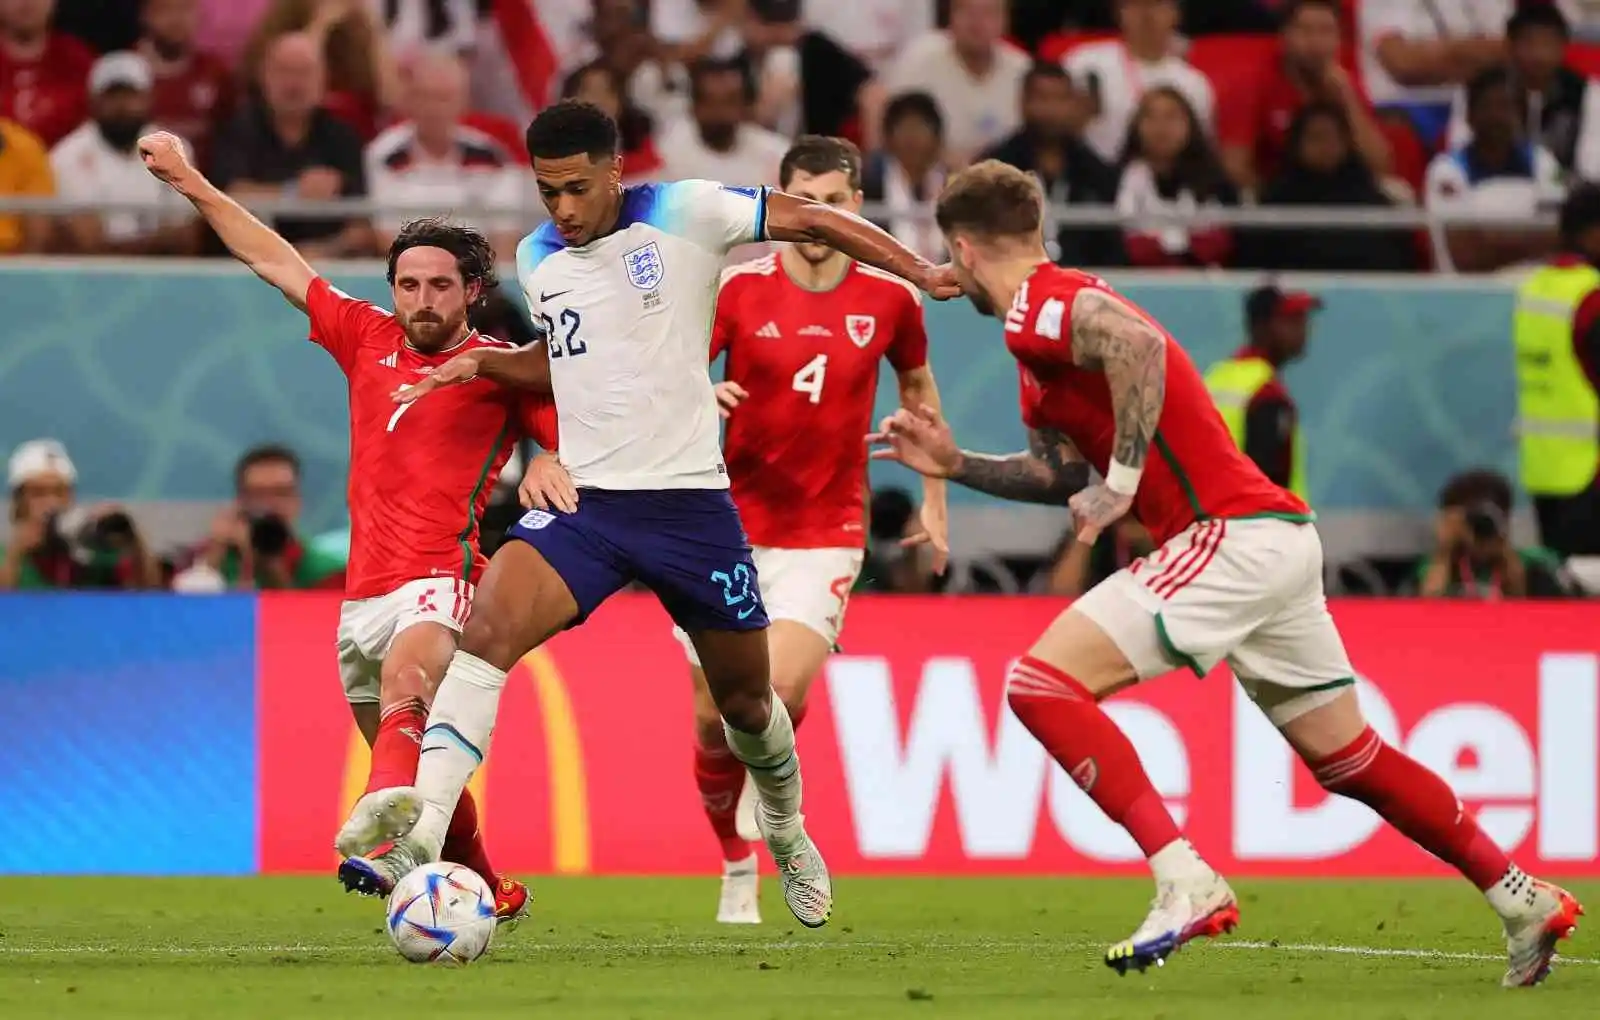 İngiltere ve ABD, Dünya Kupası’nda son 16’ya kaldı
